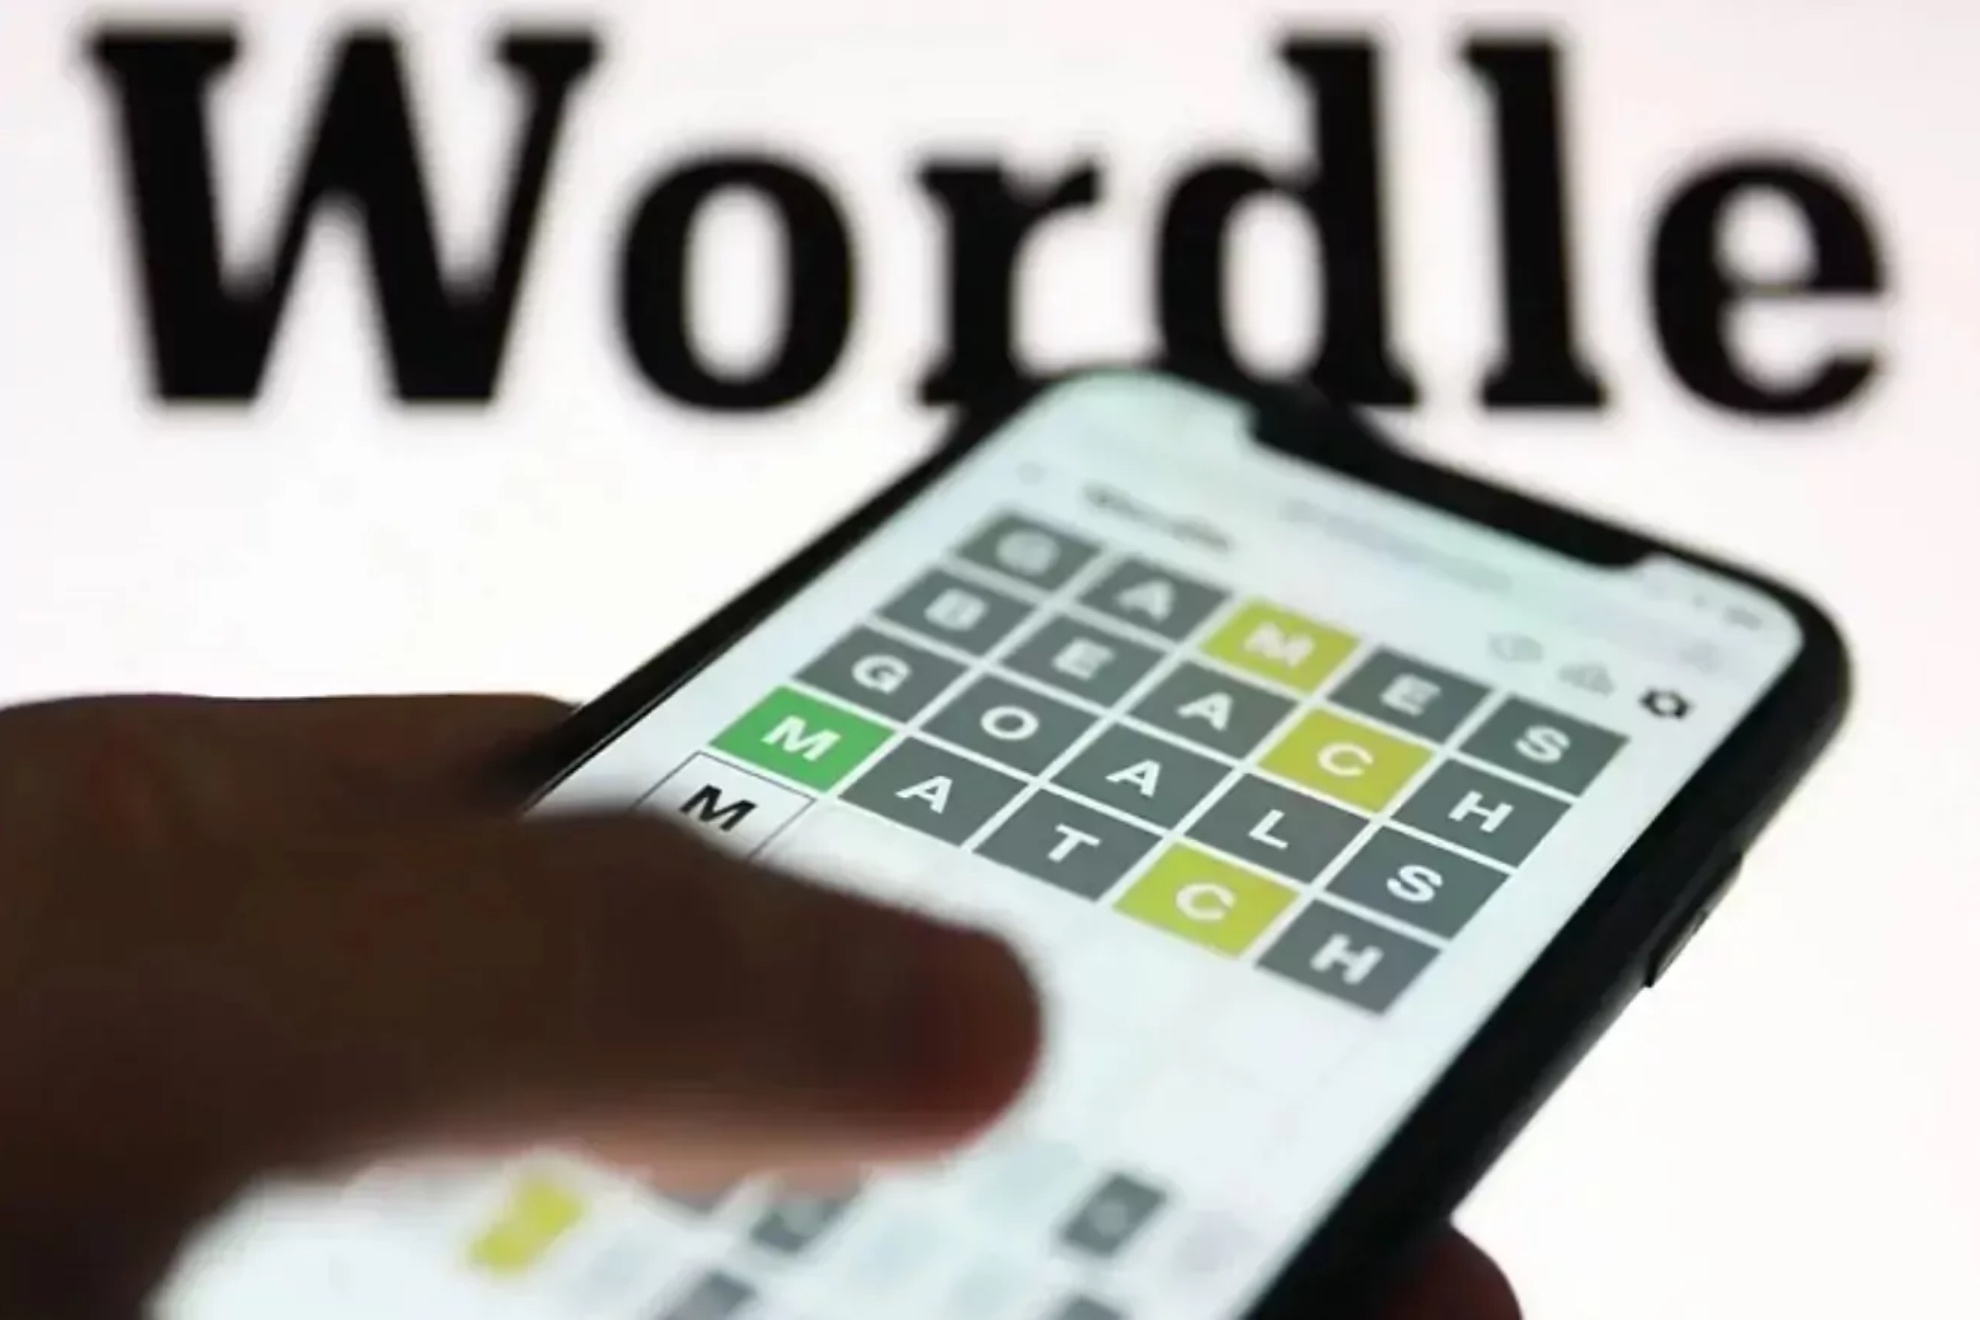 Wordle espaol hoy, 28 de abril: normal, tildes y cientfico | Soluciones y pistas para adivinar la palabra